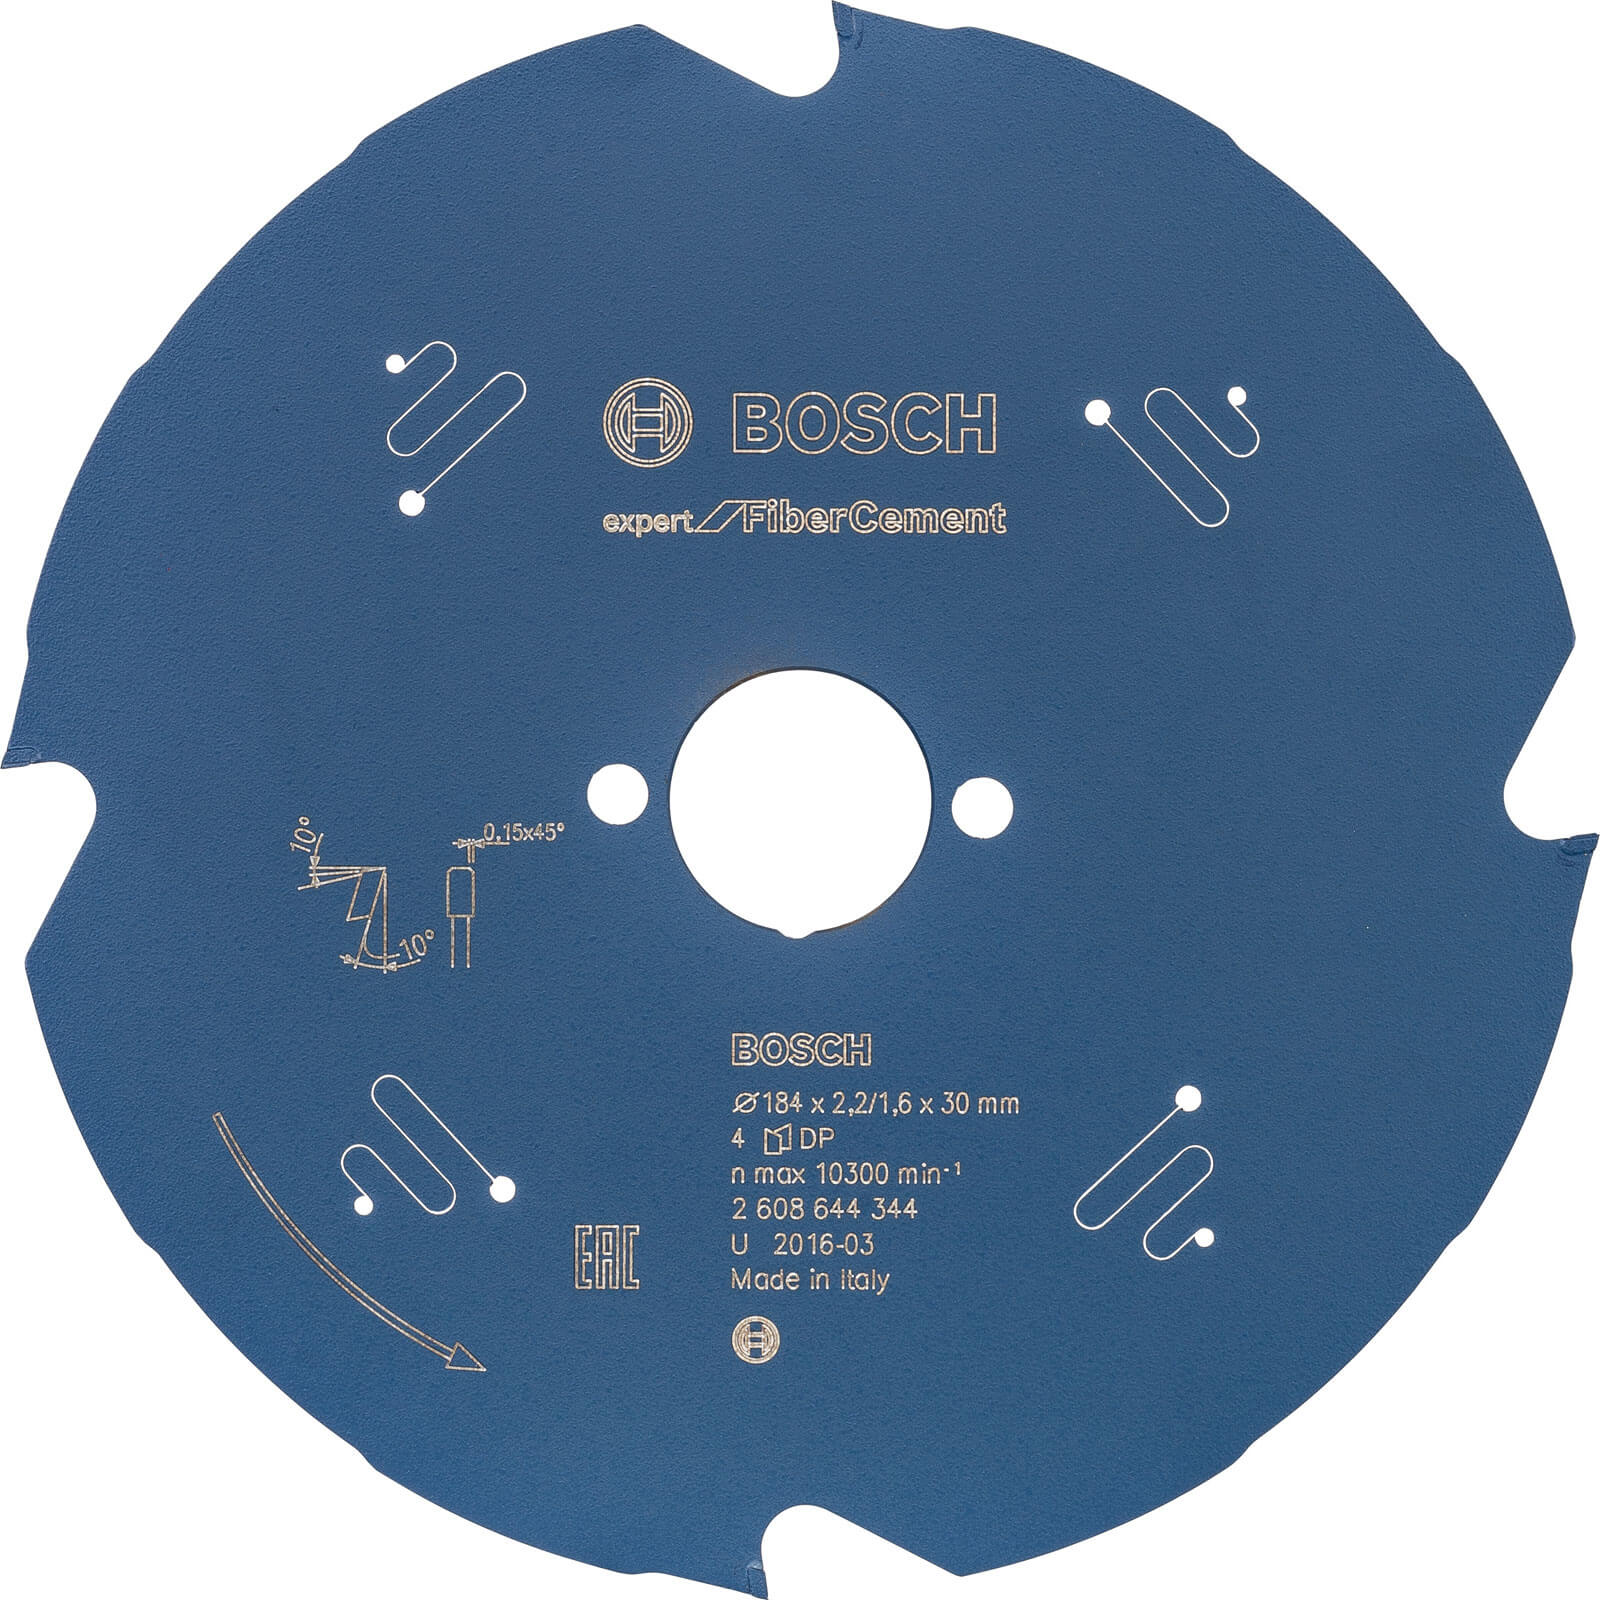 Bosch Fiber Cement Cutting Saw Blade 184mm 4T 30mm